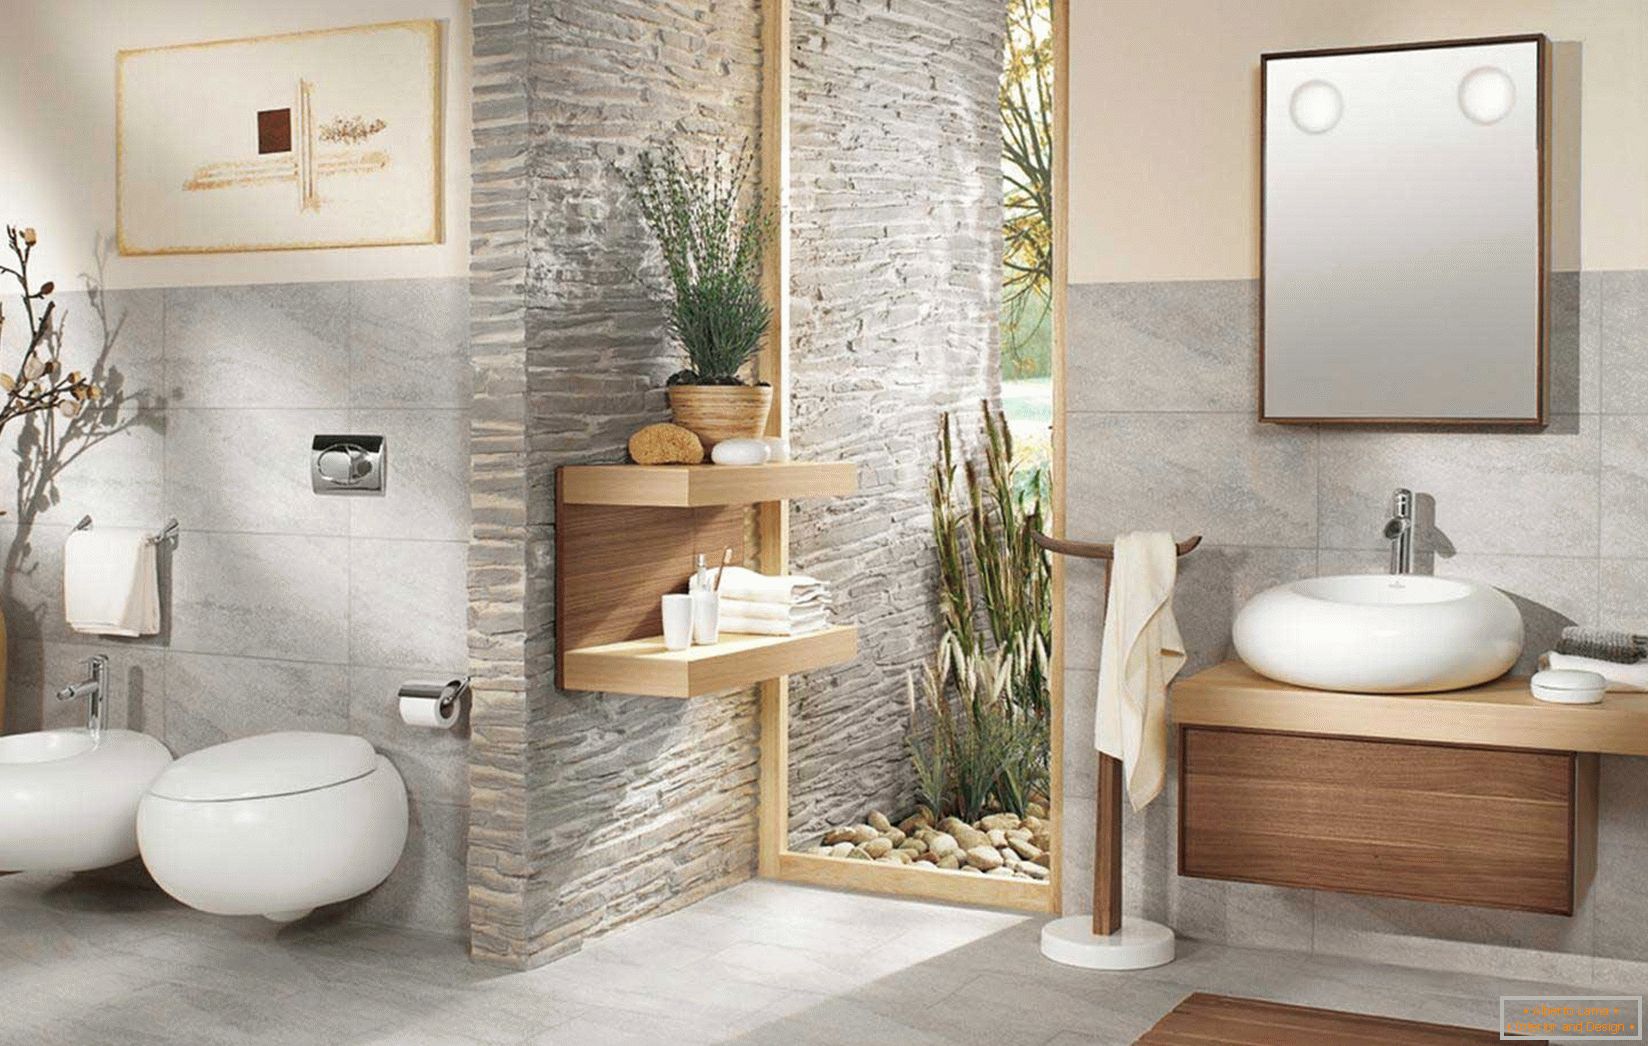 Modernă instalație sanitară în baie